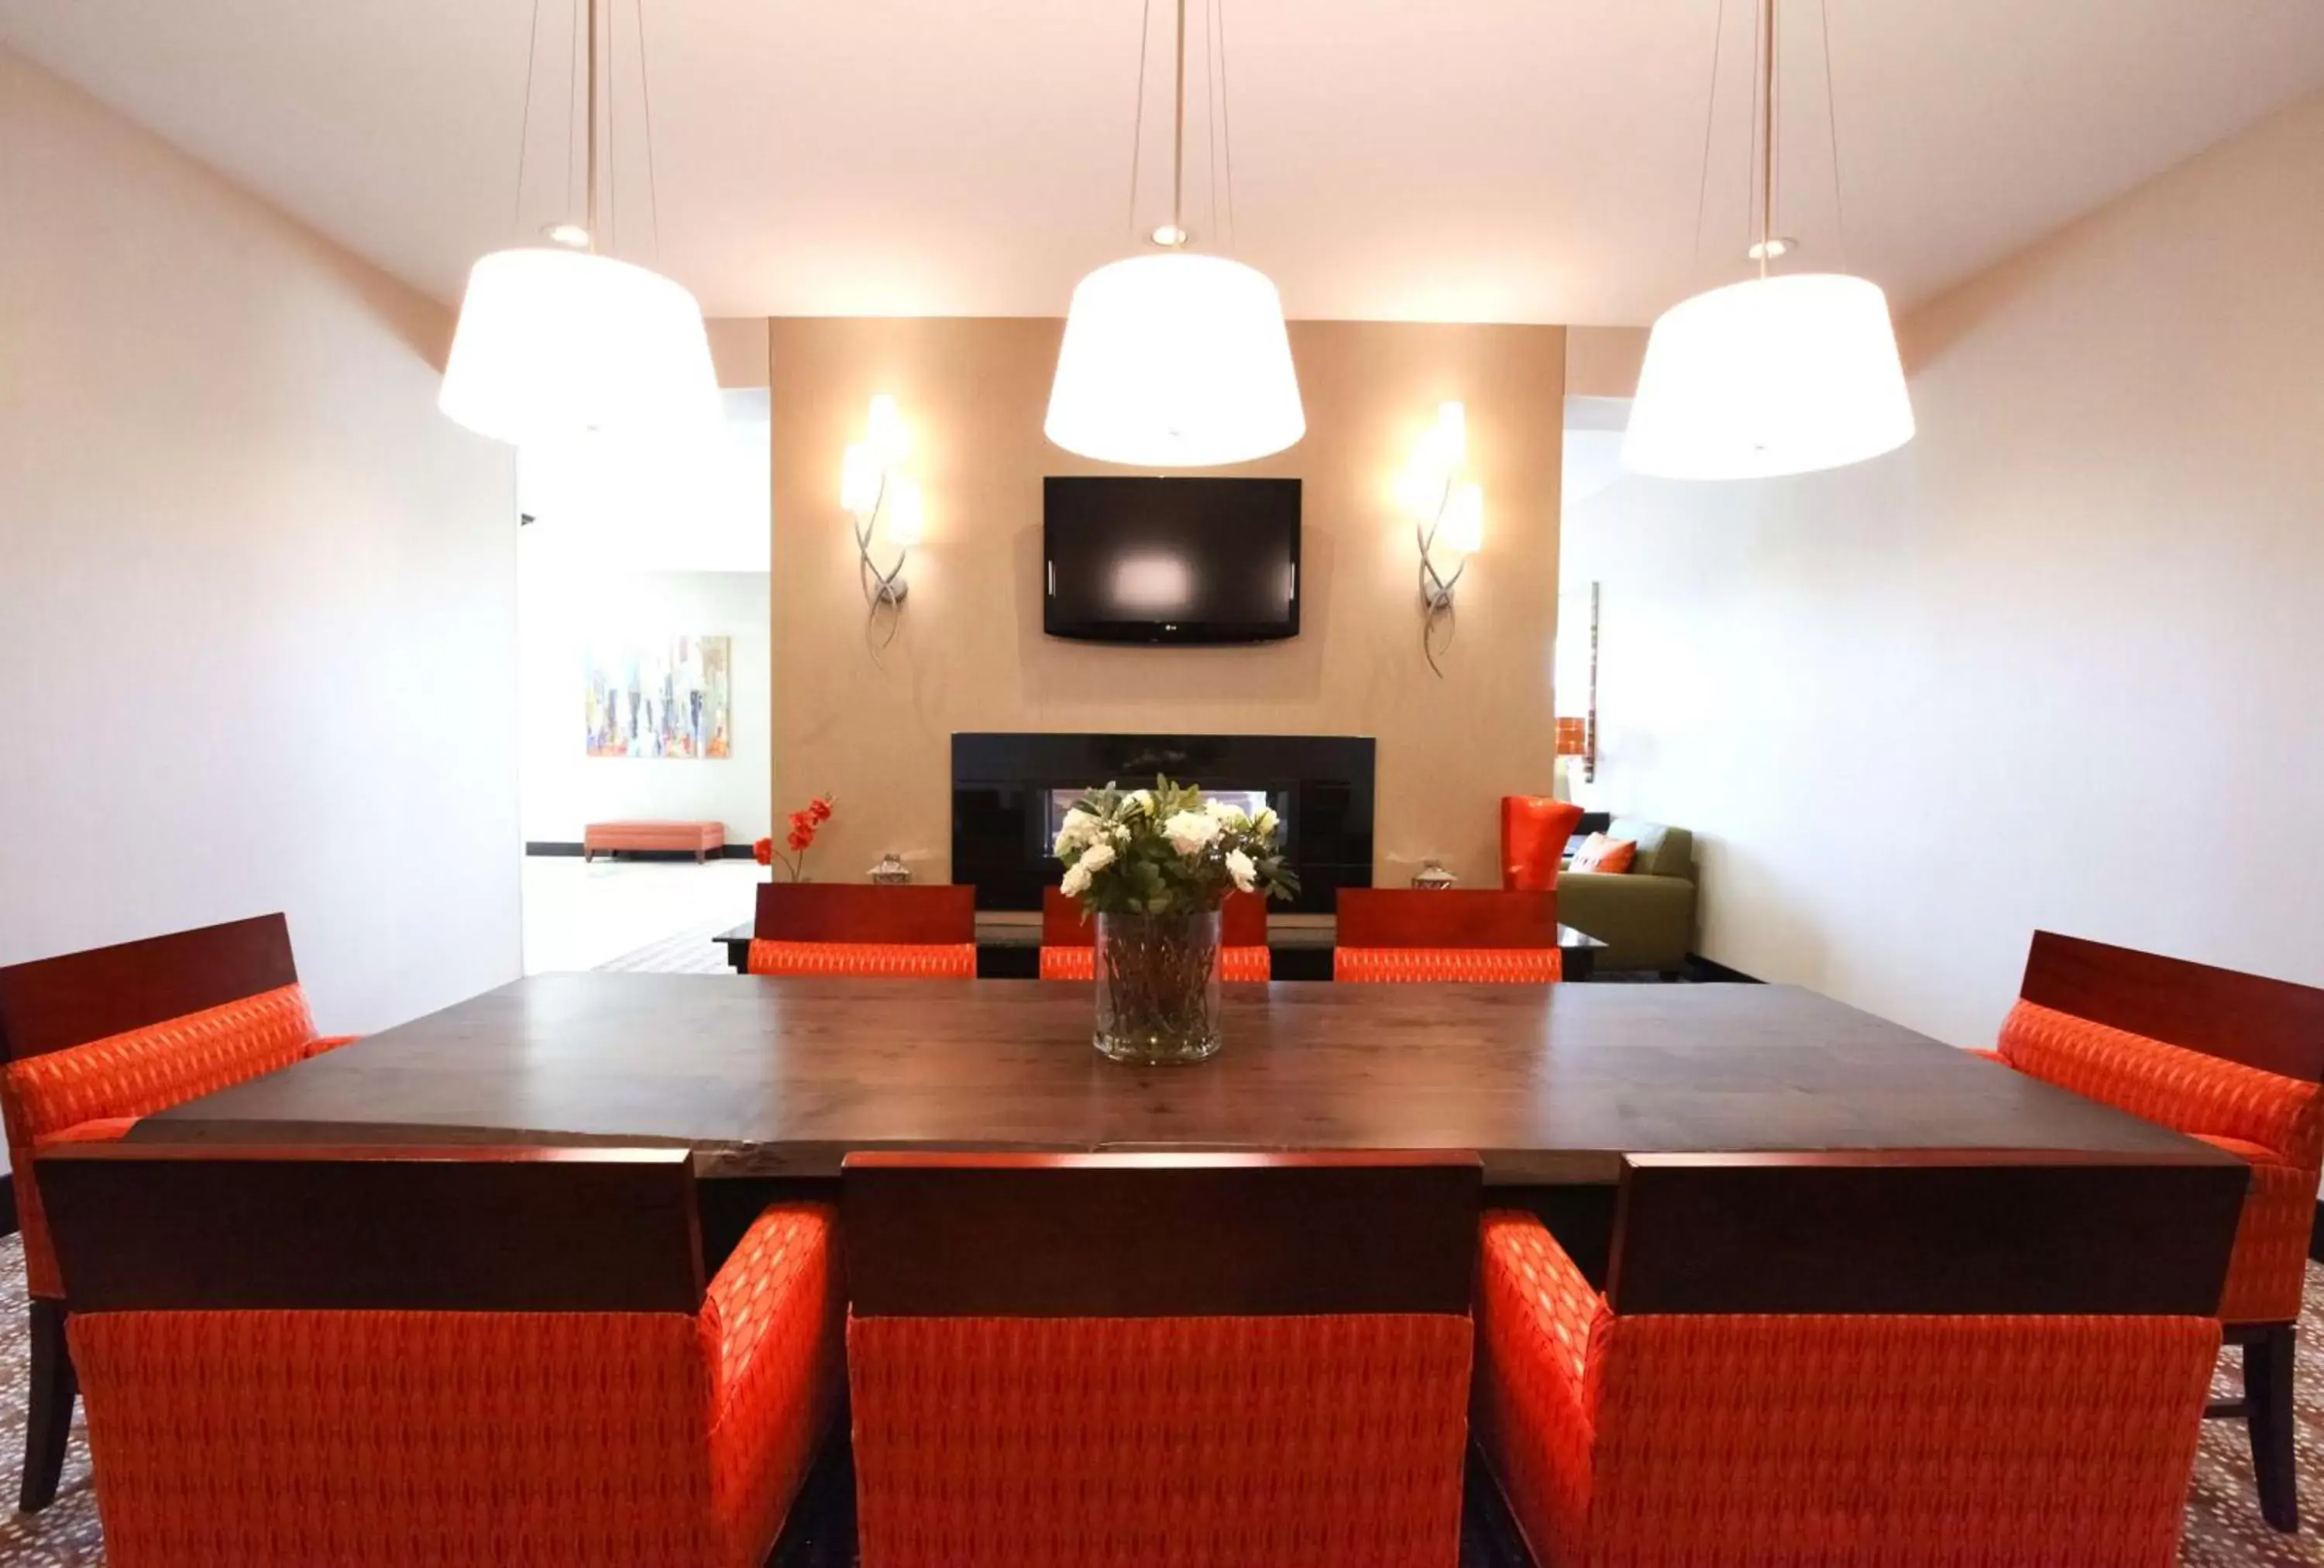 Lobby or reception, Dining Area in Hilton Garden Inn Olathe